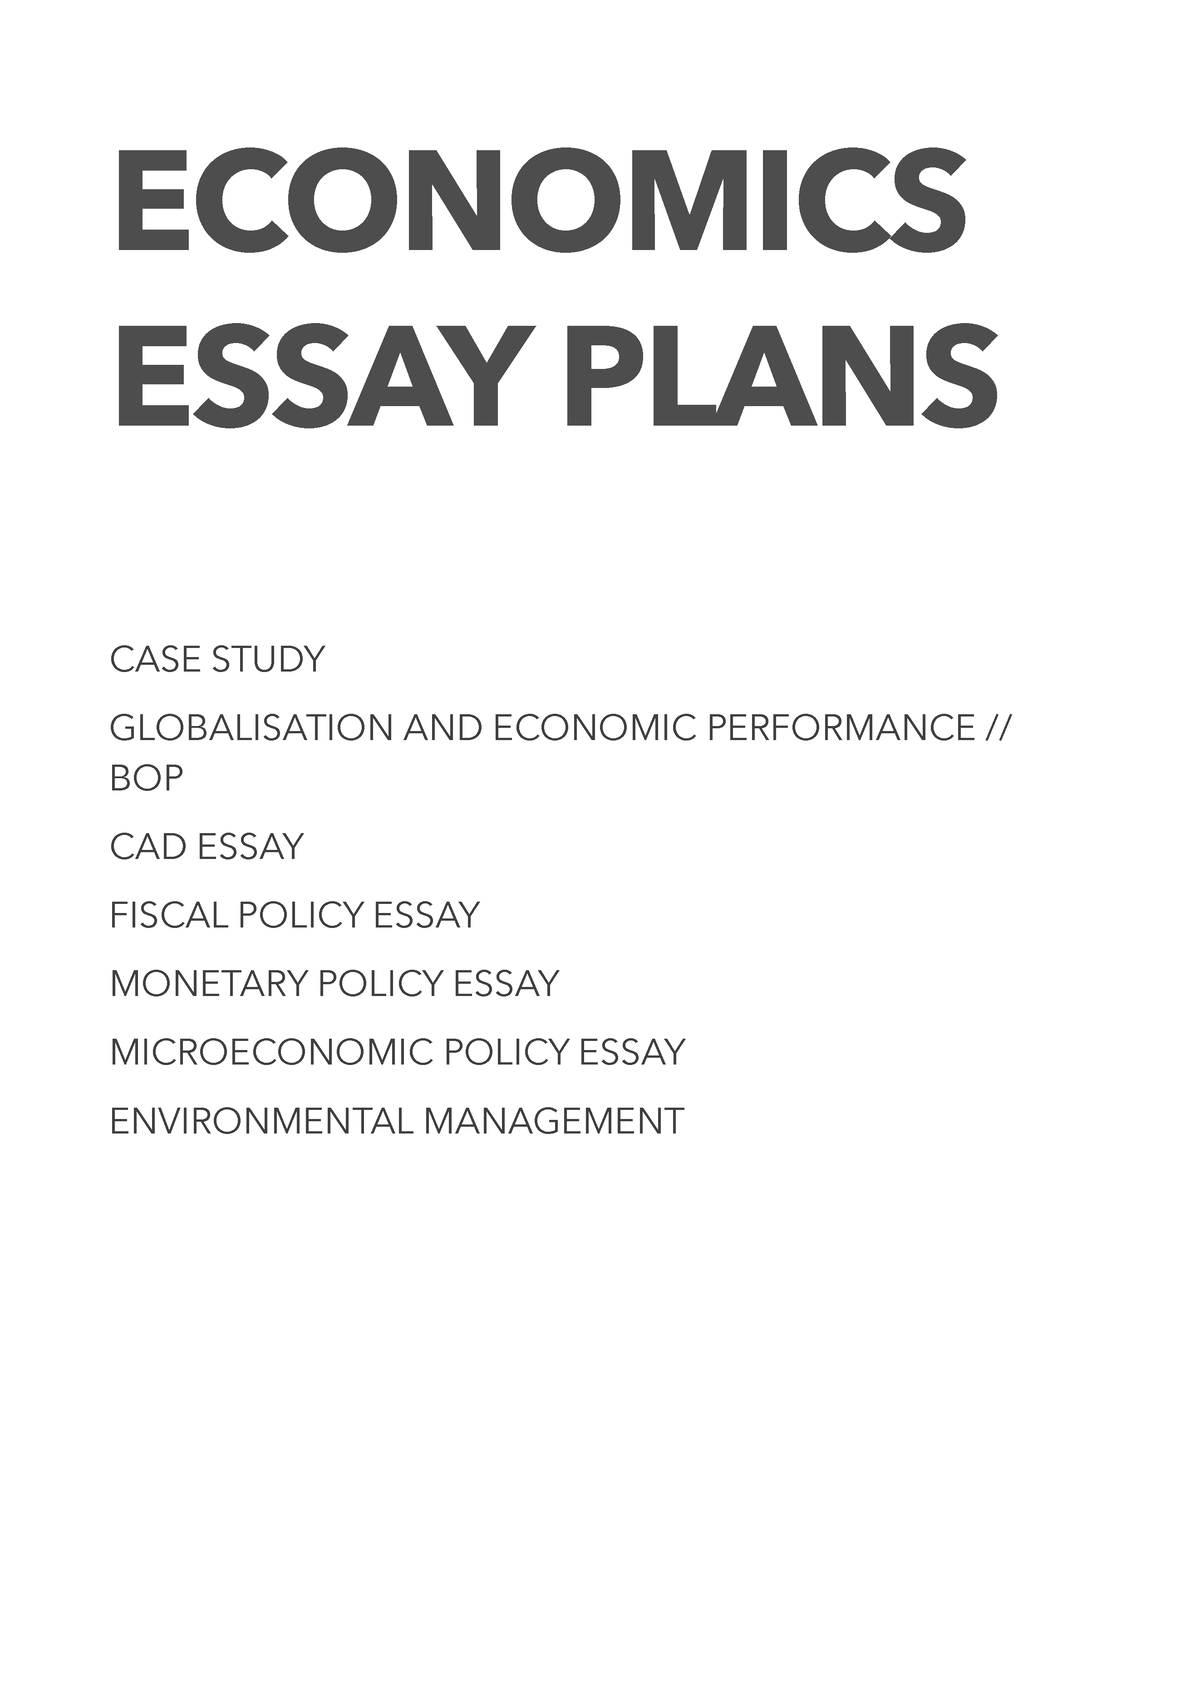 ib economics essay plans